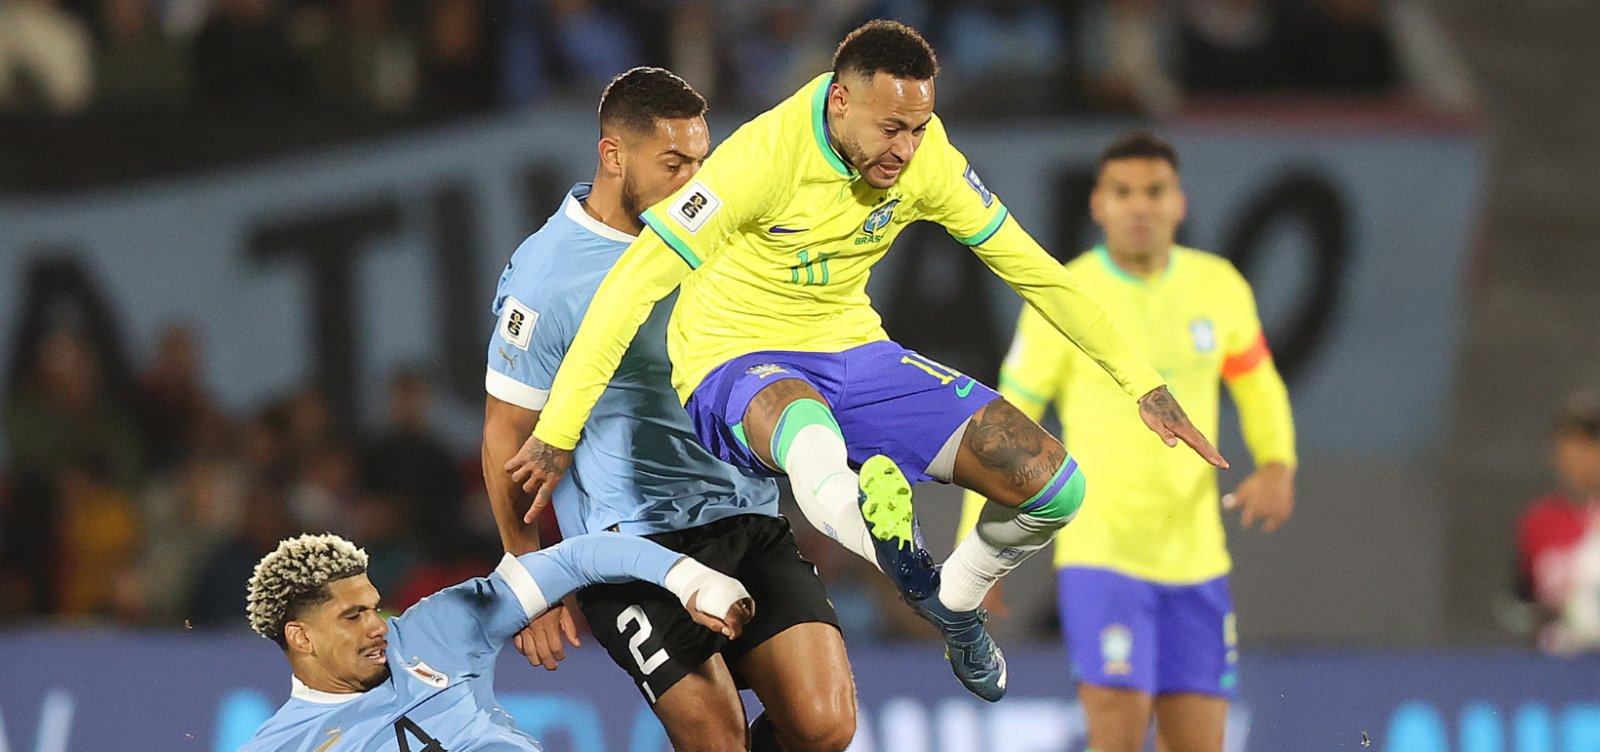 Médico da Seleção afirma que lesão no joelho esquerdo de Neymar é complexa